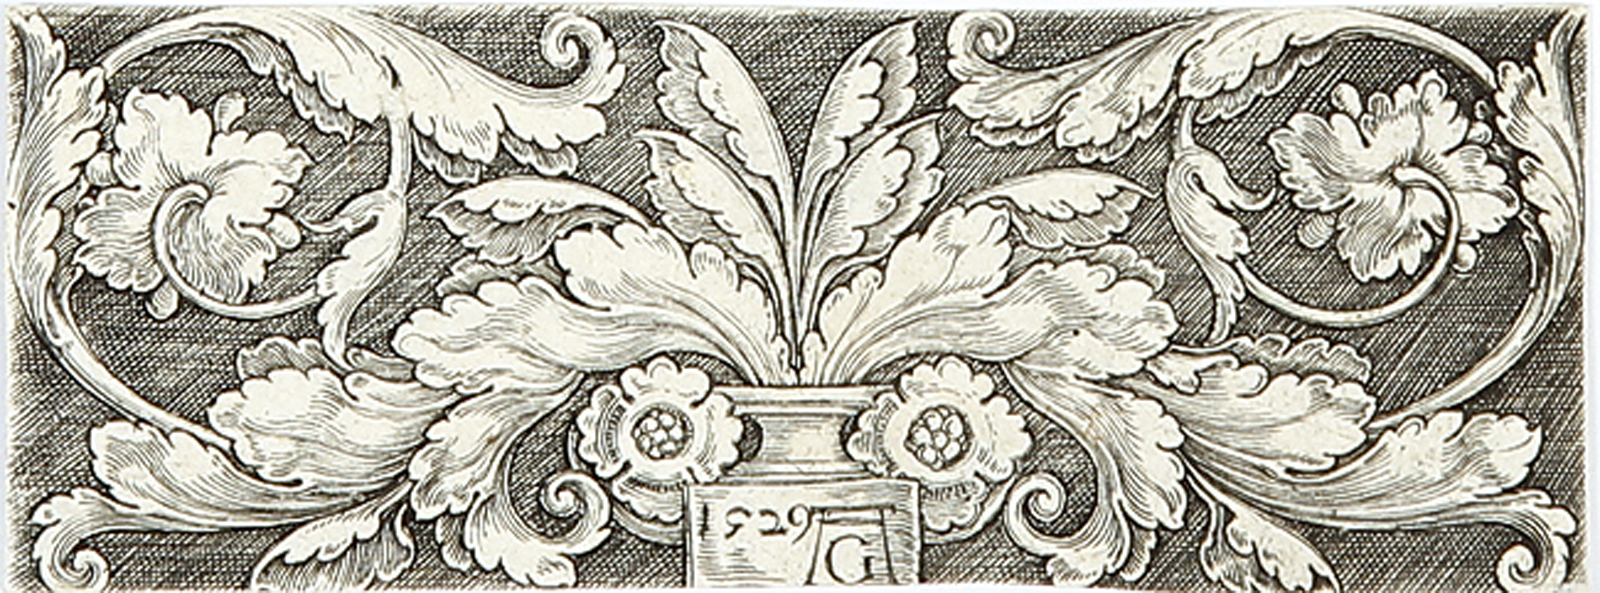 Fries mit je zwei Delphinen und Blattranken - Ornament mit zwei in Voluten endenden Ranken - Ornament mit aus einer Vase wachsendem Blattwerk.